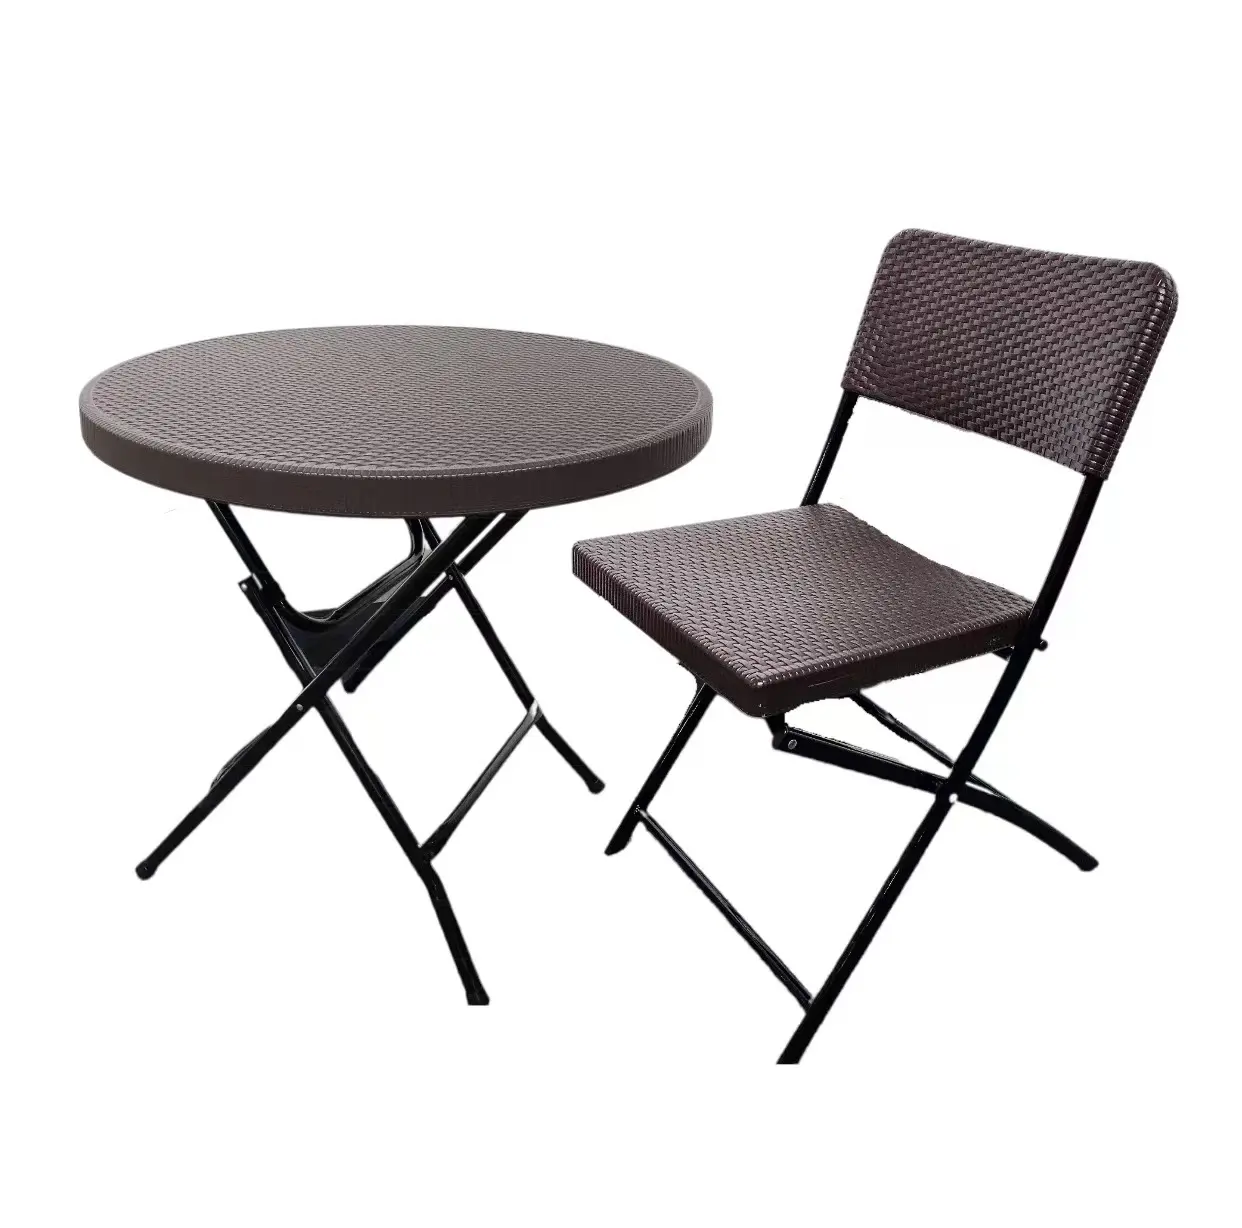 Ensemble Table et chaises pliantes en plastique, livraison gratuite, Design moderne en rotin